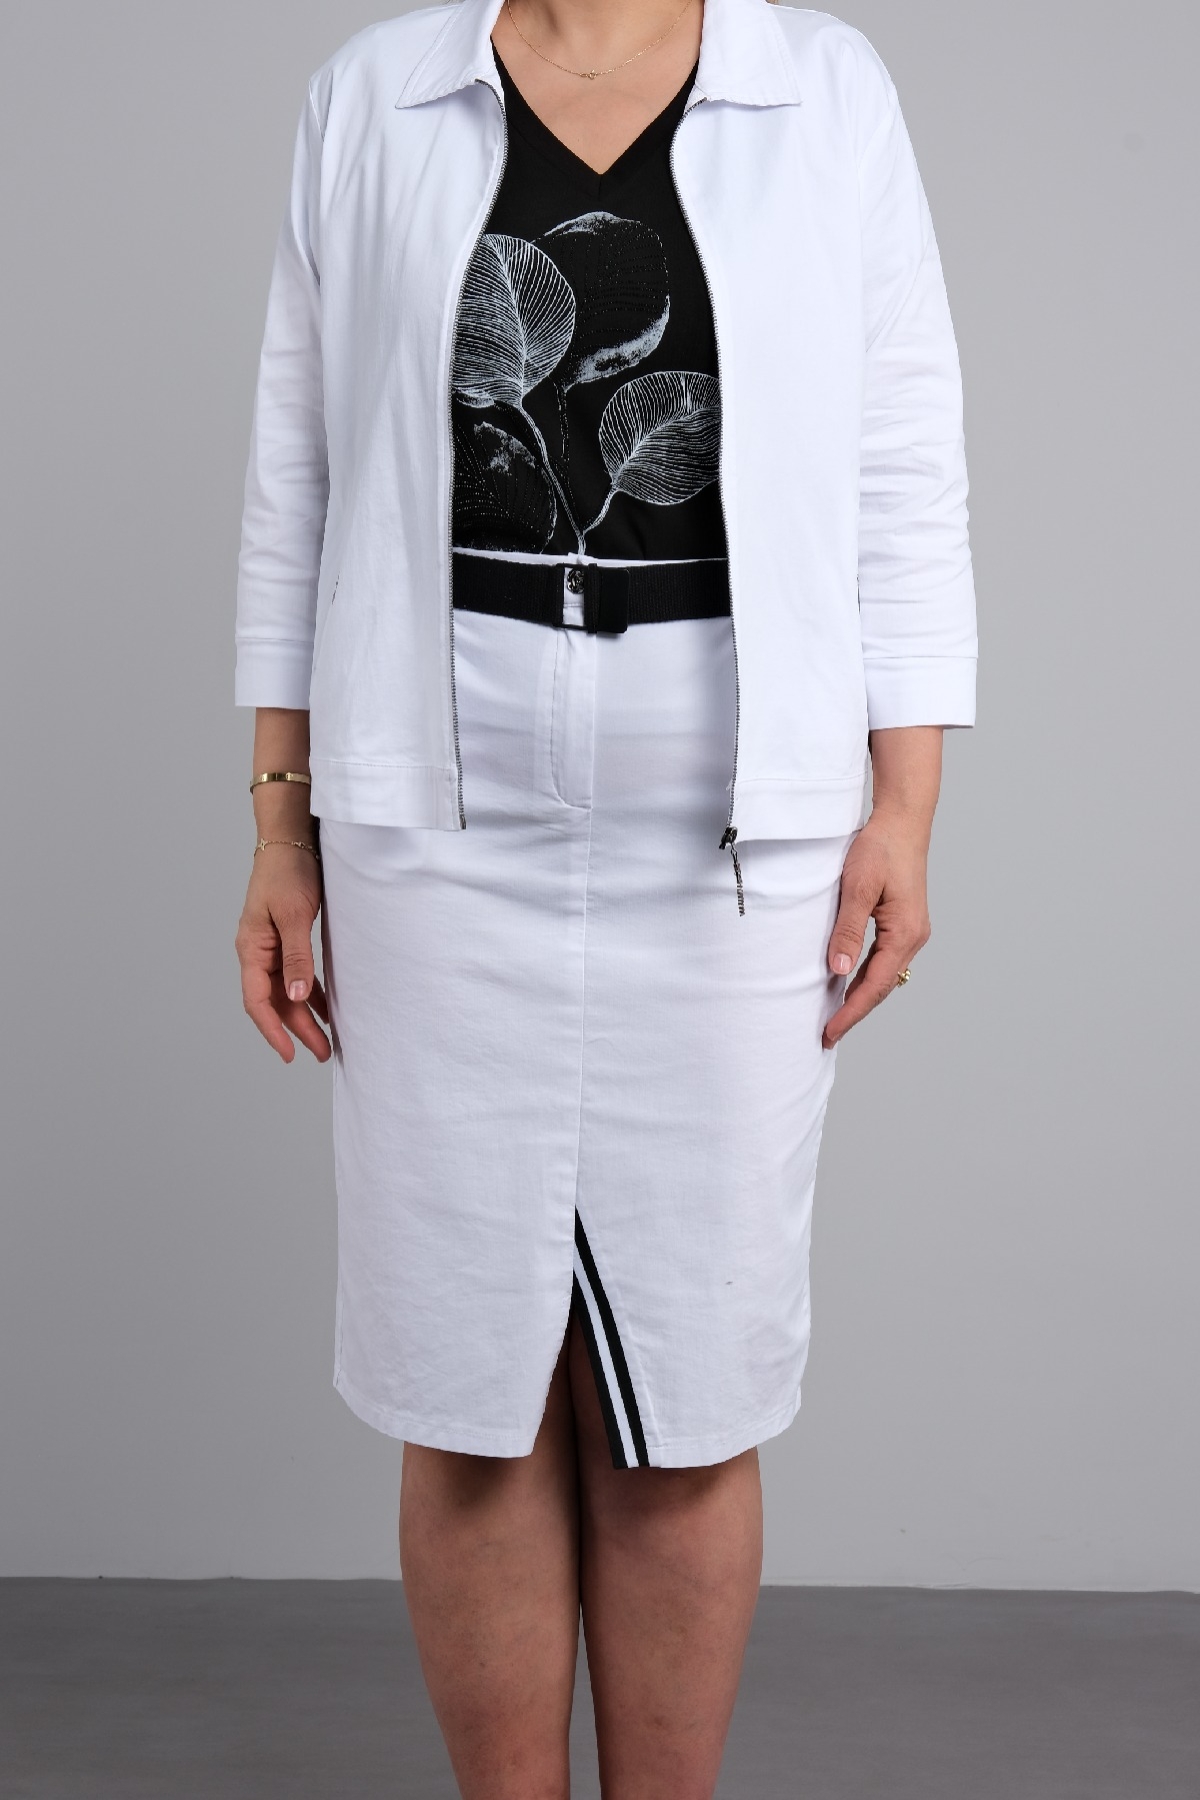 Women's 3 Piece Suits-White